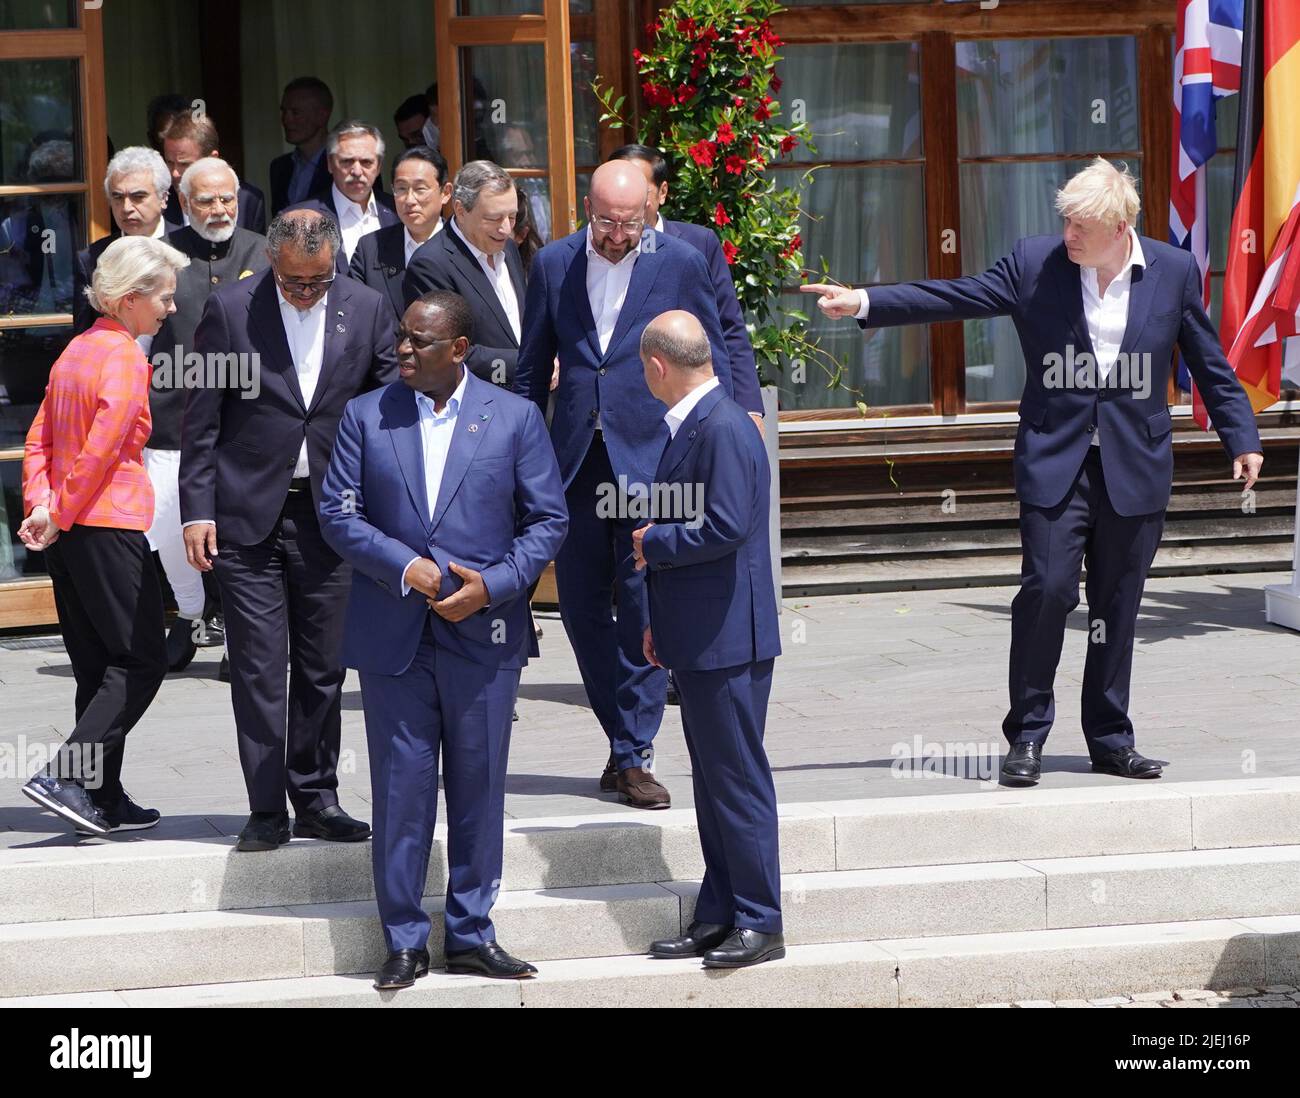 Le Premier ministre Boris Johnson, (à droite), interagit avec d'autres dirigeants des G7 pays partenaires lors d'une longue photo de famille, lors du sommet de G7 à Schloss Elmau, dans les Alpes bavaroises, en Allemagne. Date de la photo: Lundi 27 juin 2022. Banque D'Images